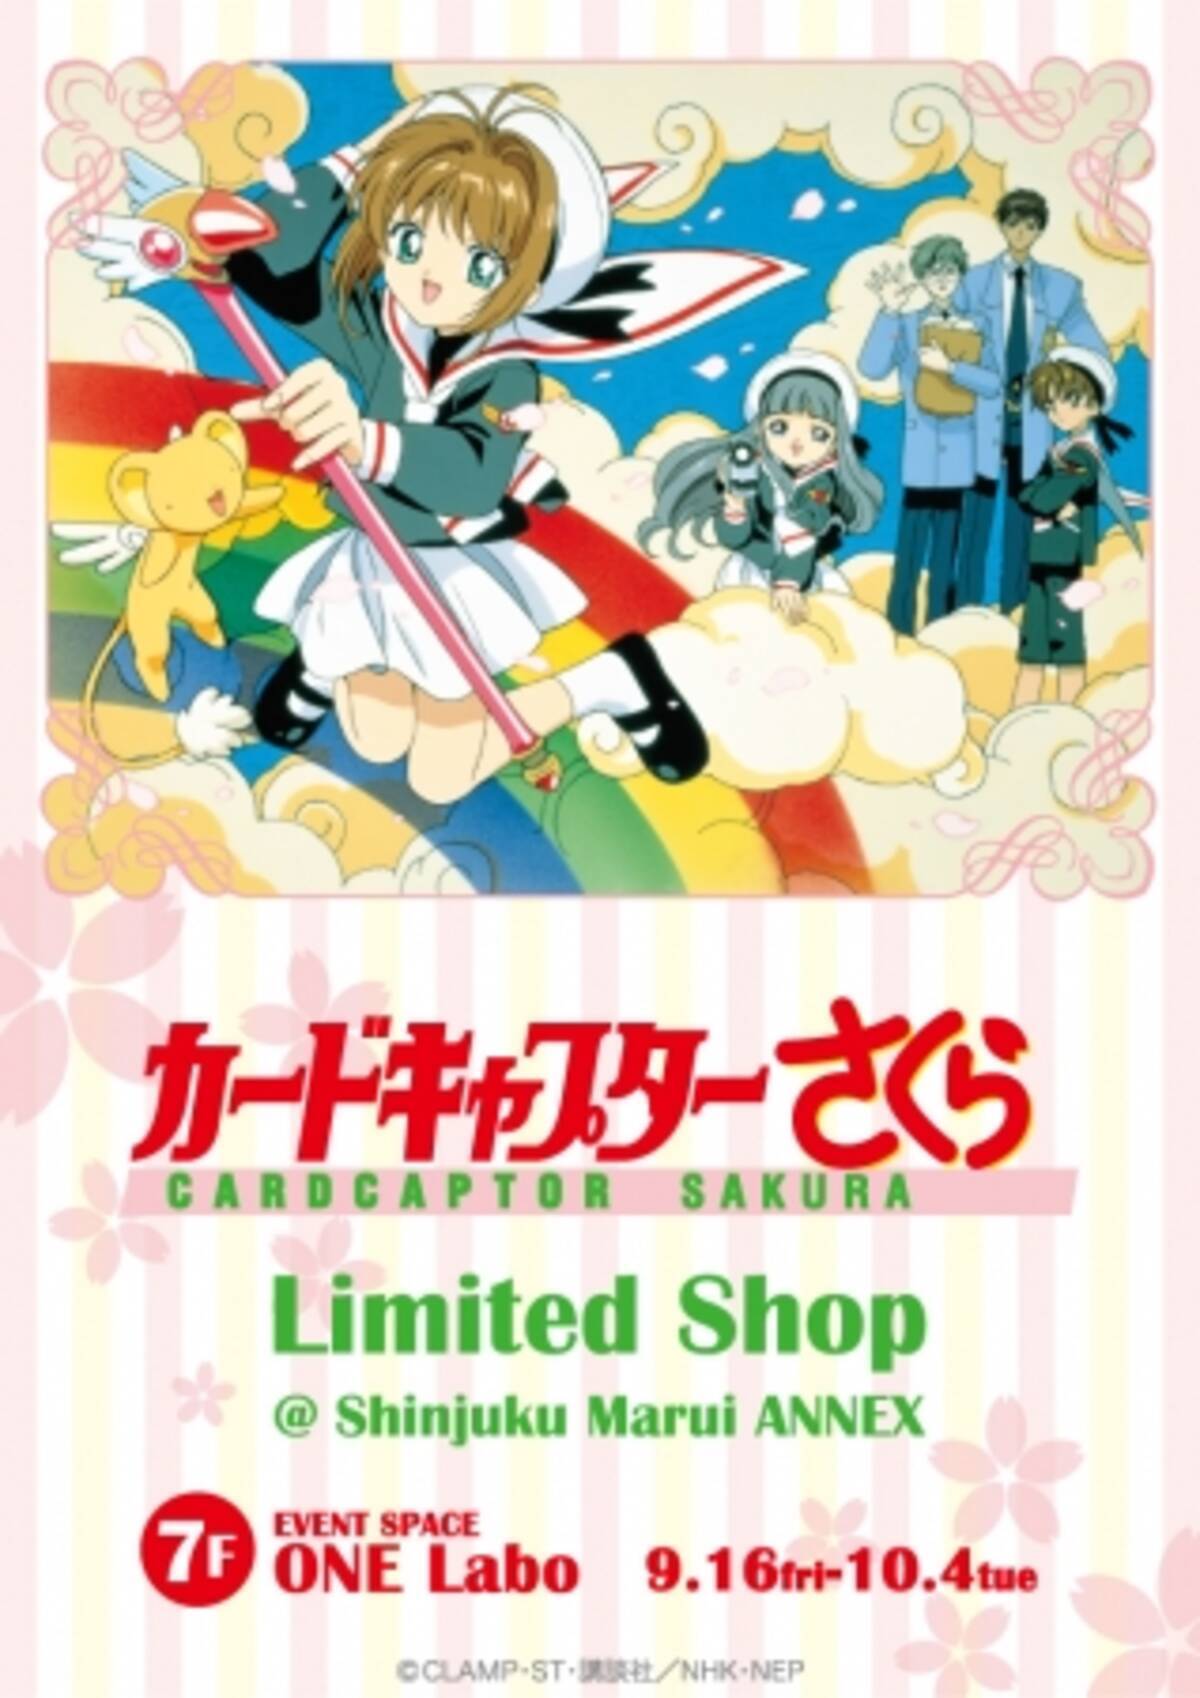 カードキャプターさくらlimited Shop 新宿マルイアネックス を9月16日 金 10月4日 火 の期間限定でオープン 16年9月15日 エキサイトニュース